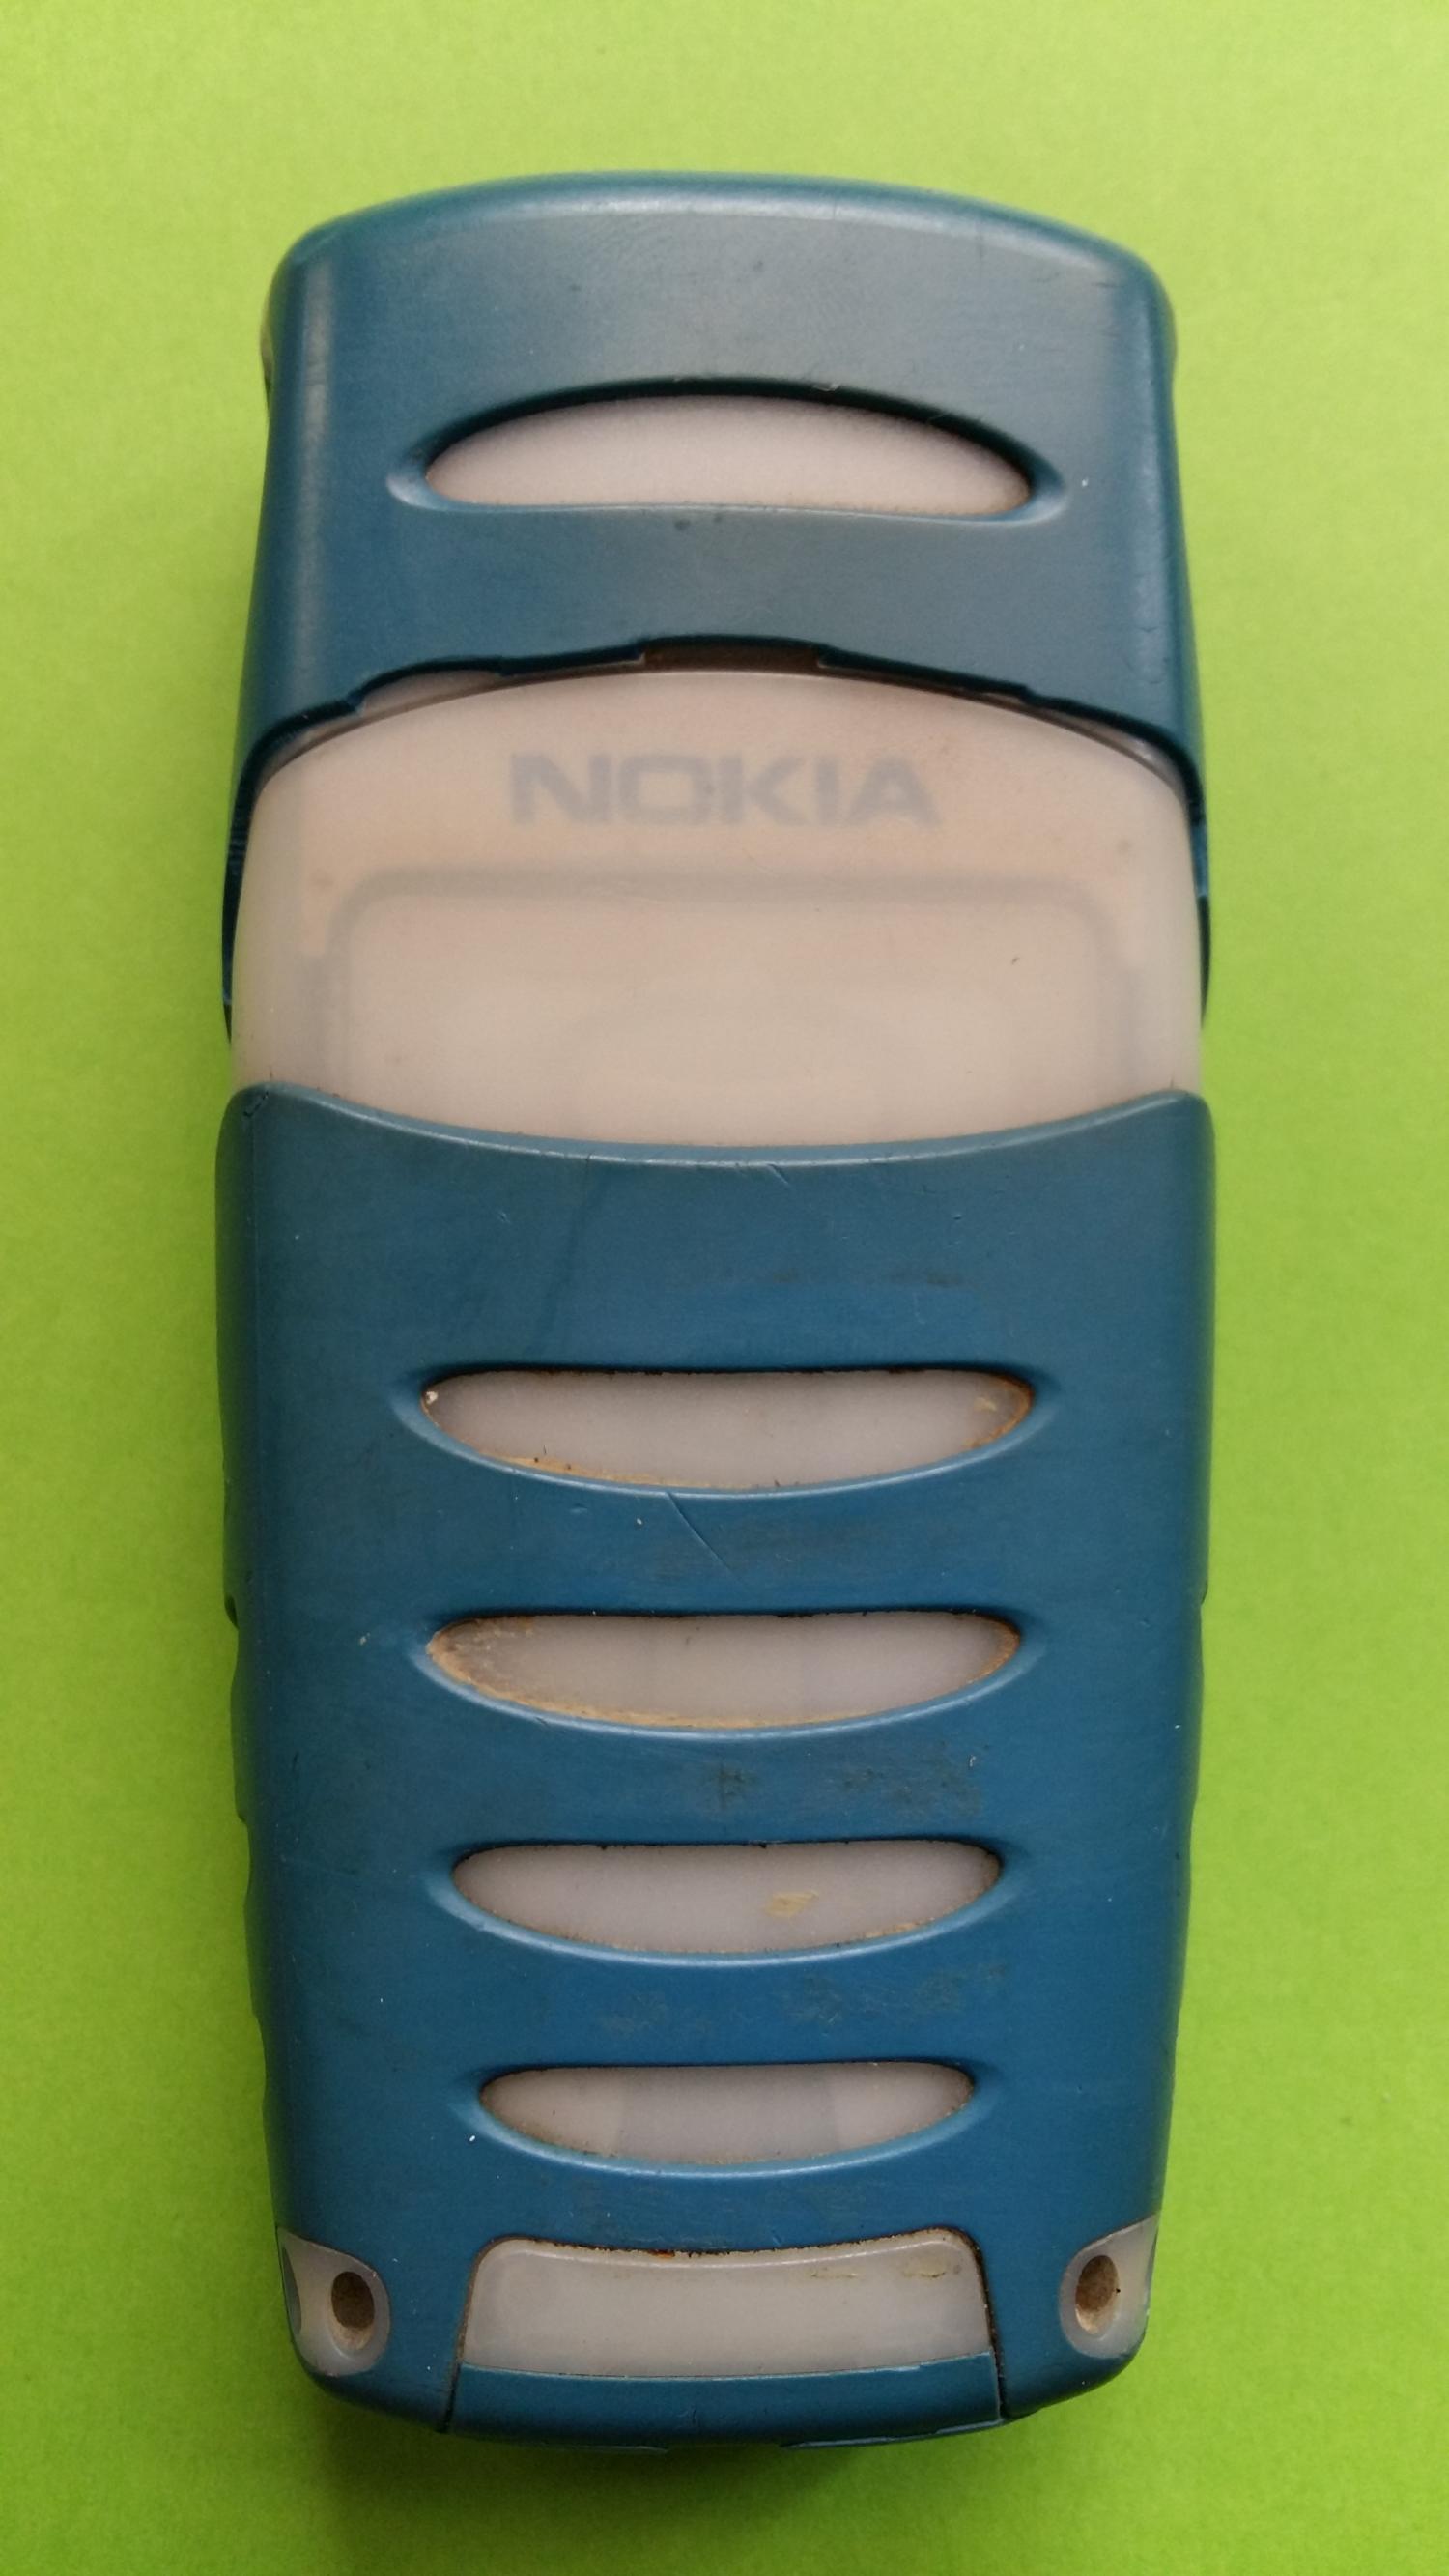 image-7339048-Nokia 5100 (2)2.jpg